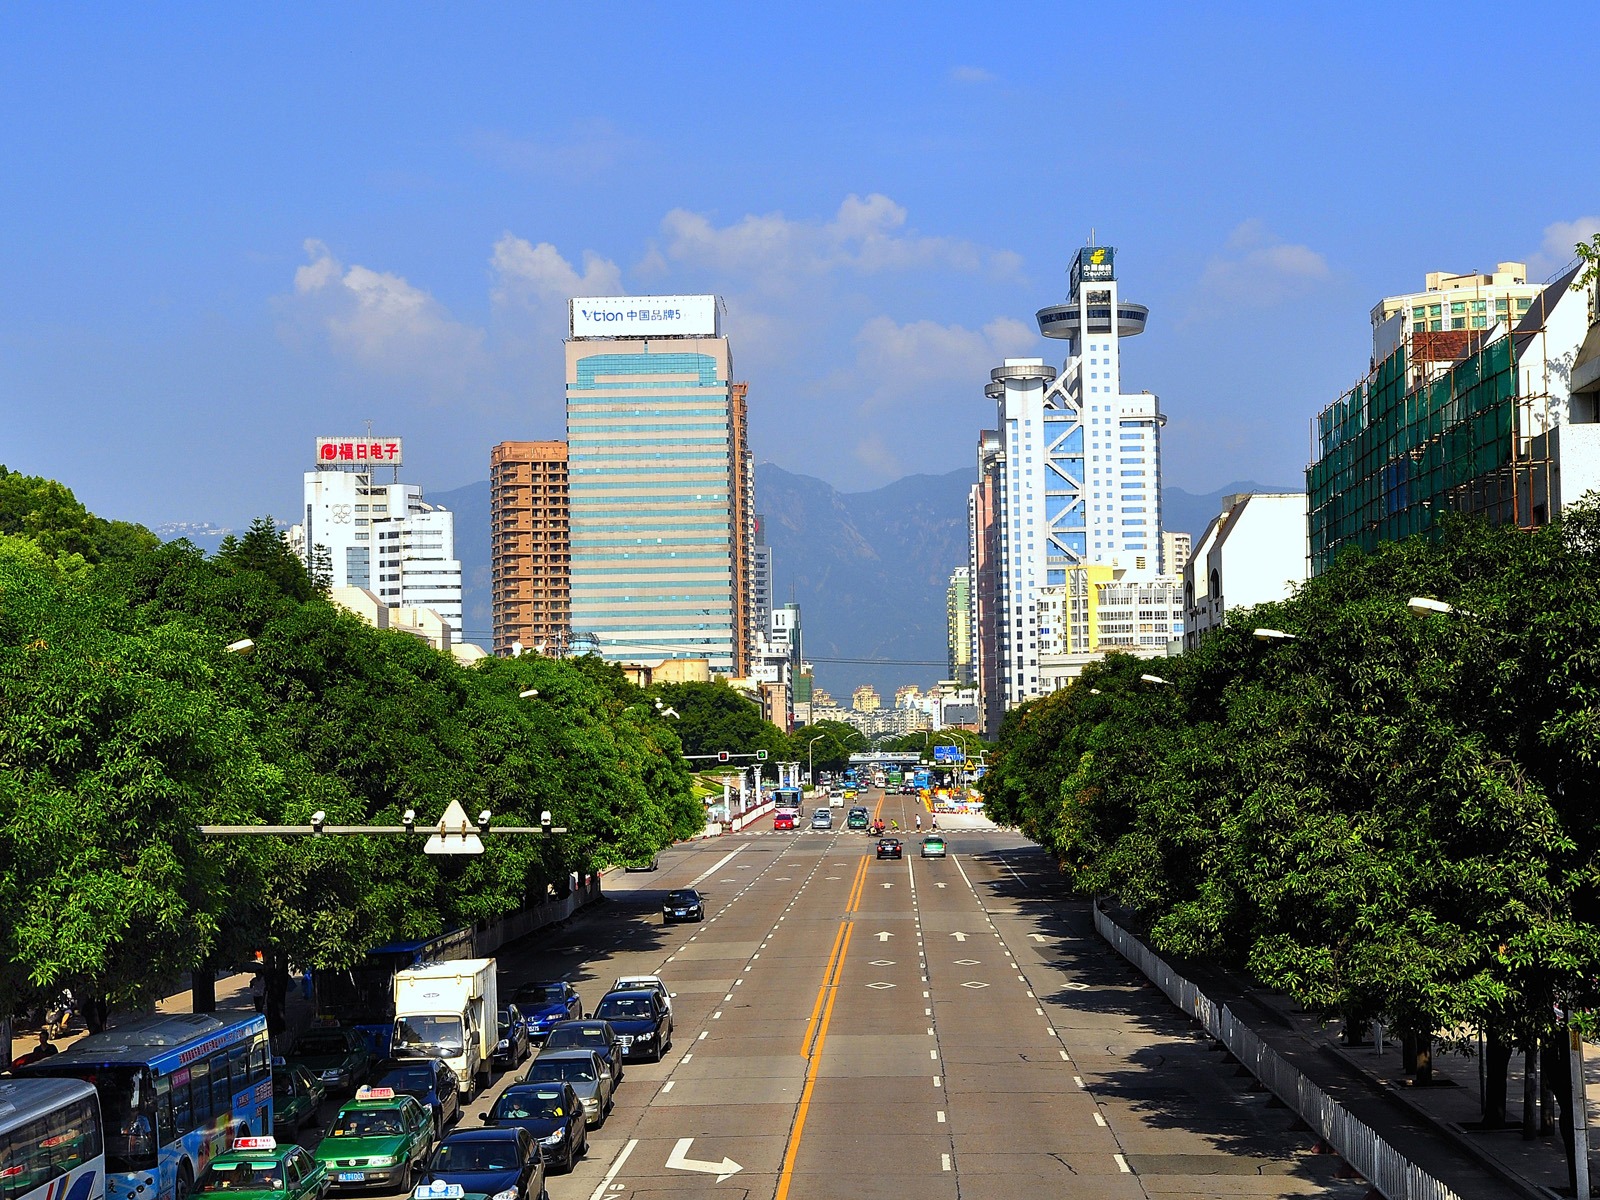 rue Fuzhou avec la prise de vue (photo Travaux de changement) #5 - 1600x1200